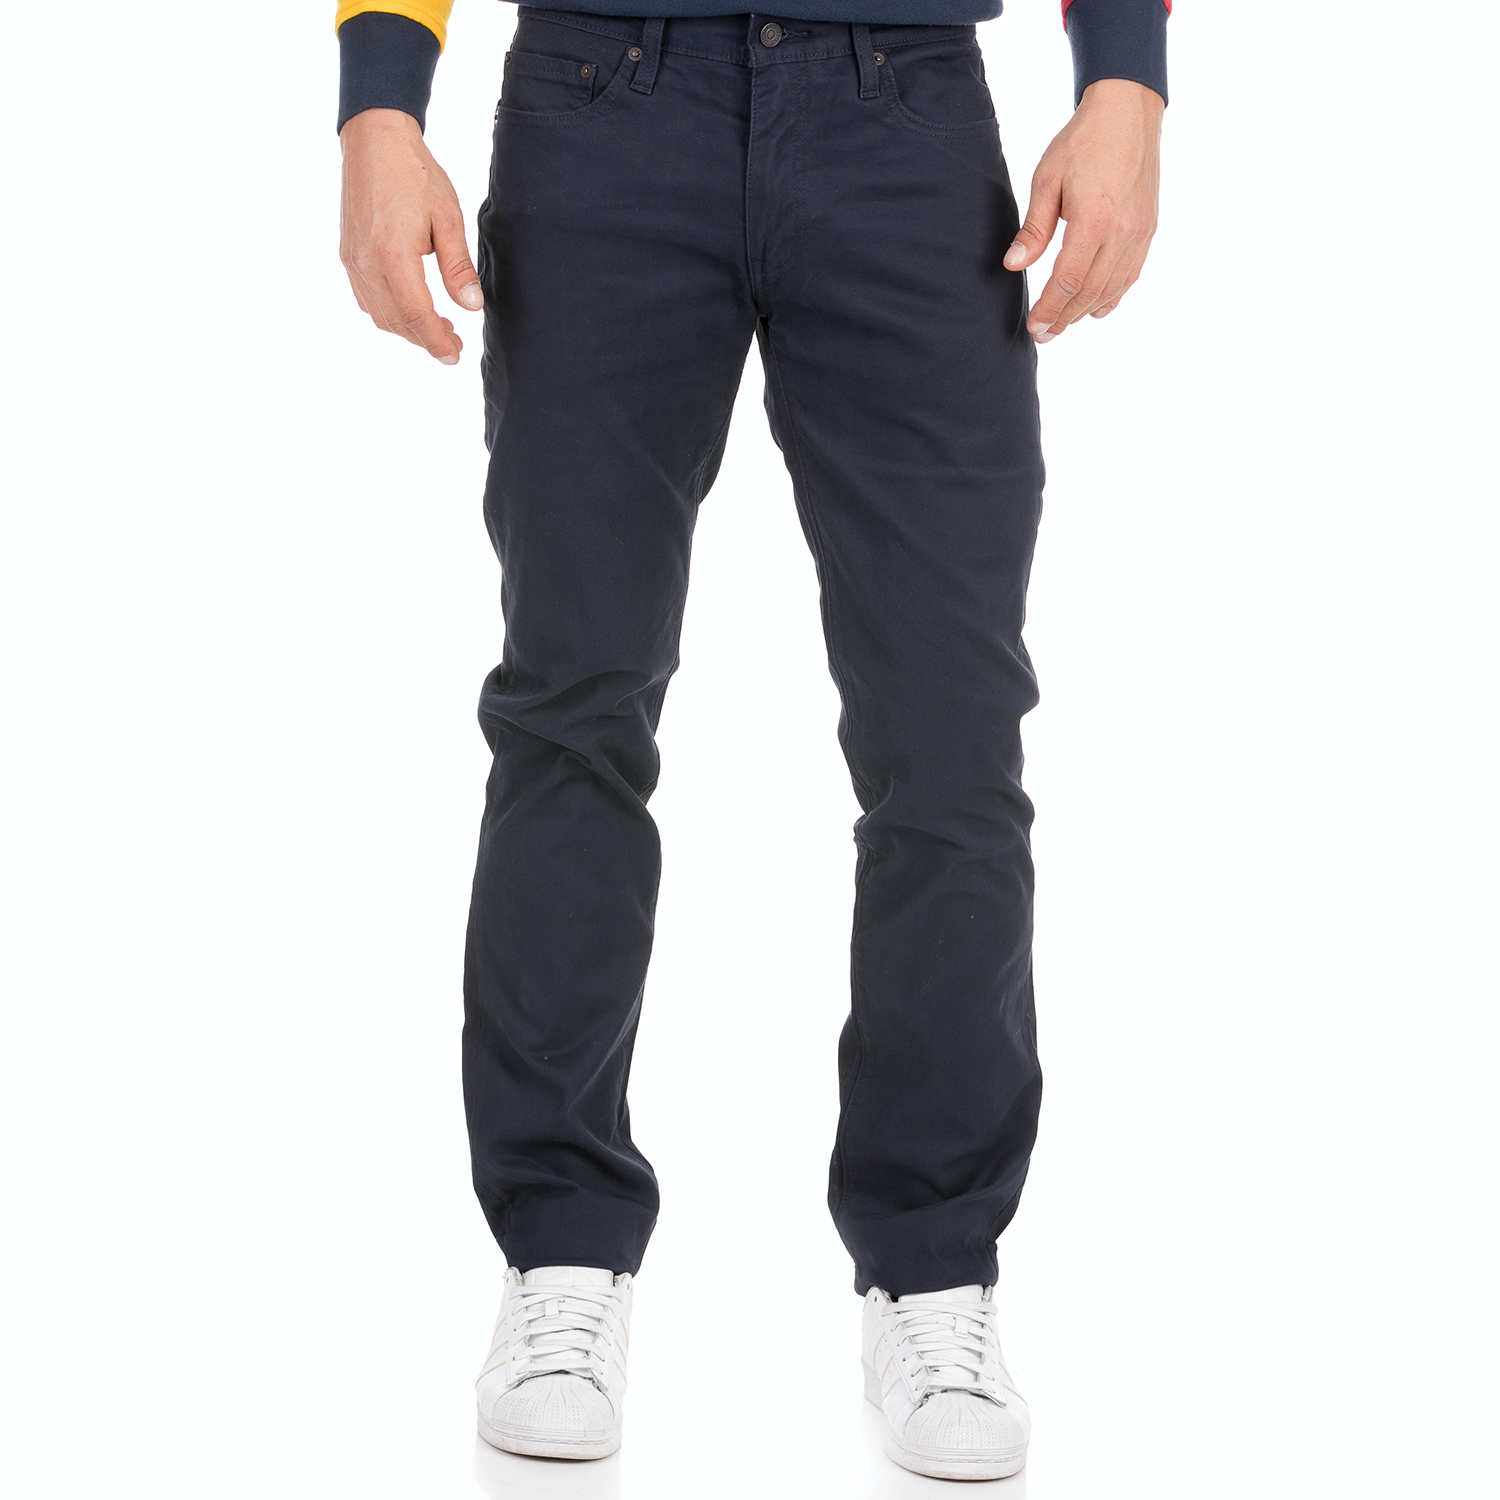 Ανδρικά/Ρούχα/Τζίν/Skinny LEVI'S - Ανδρικό jean παντελόνι LEVI'S 511 SLIM NAVY BLAZER BEDFORD μπλε